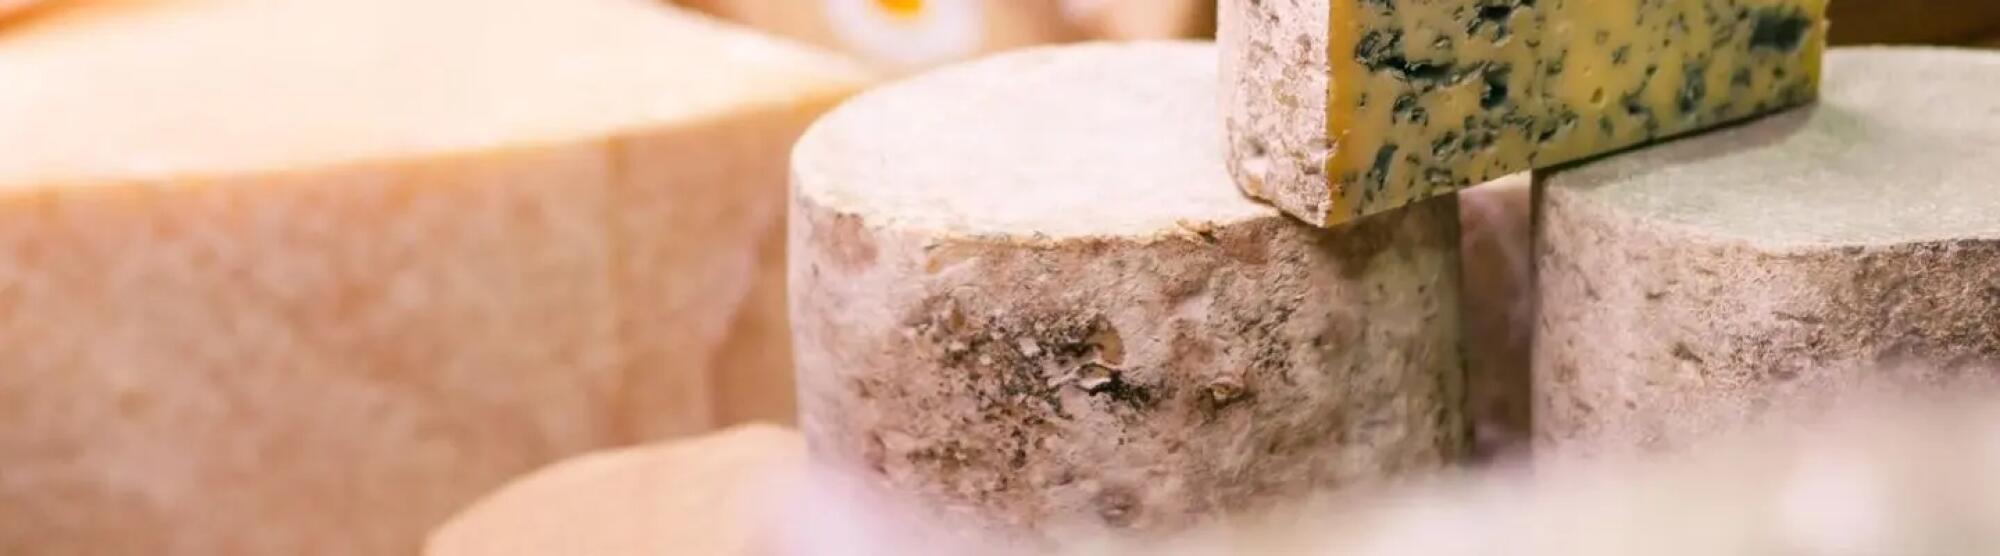 LA02_fromage lait pasteurise